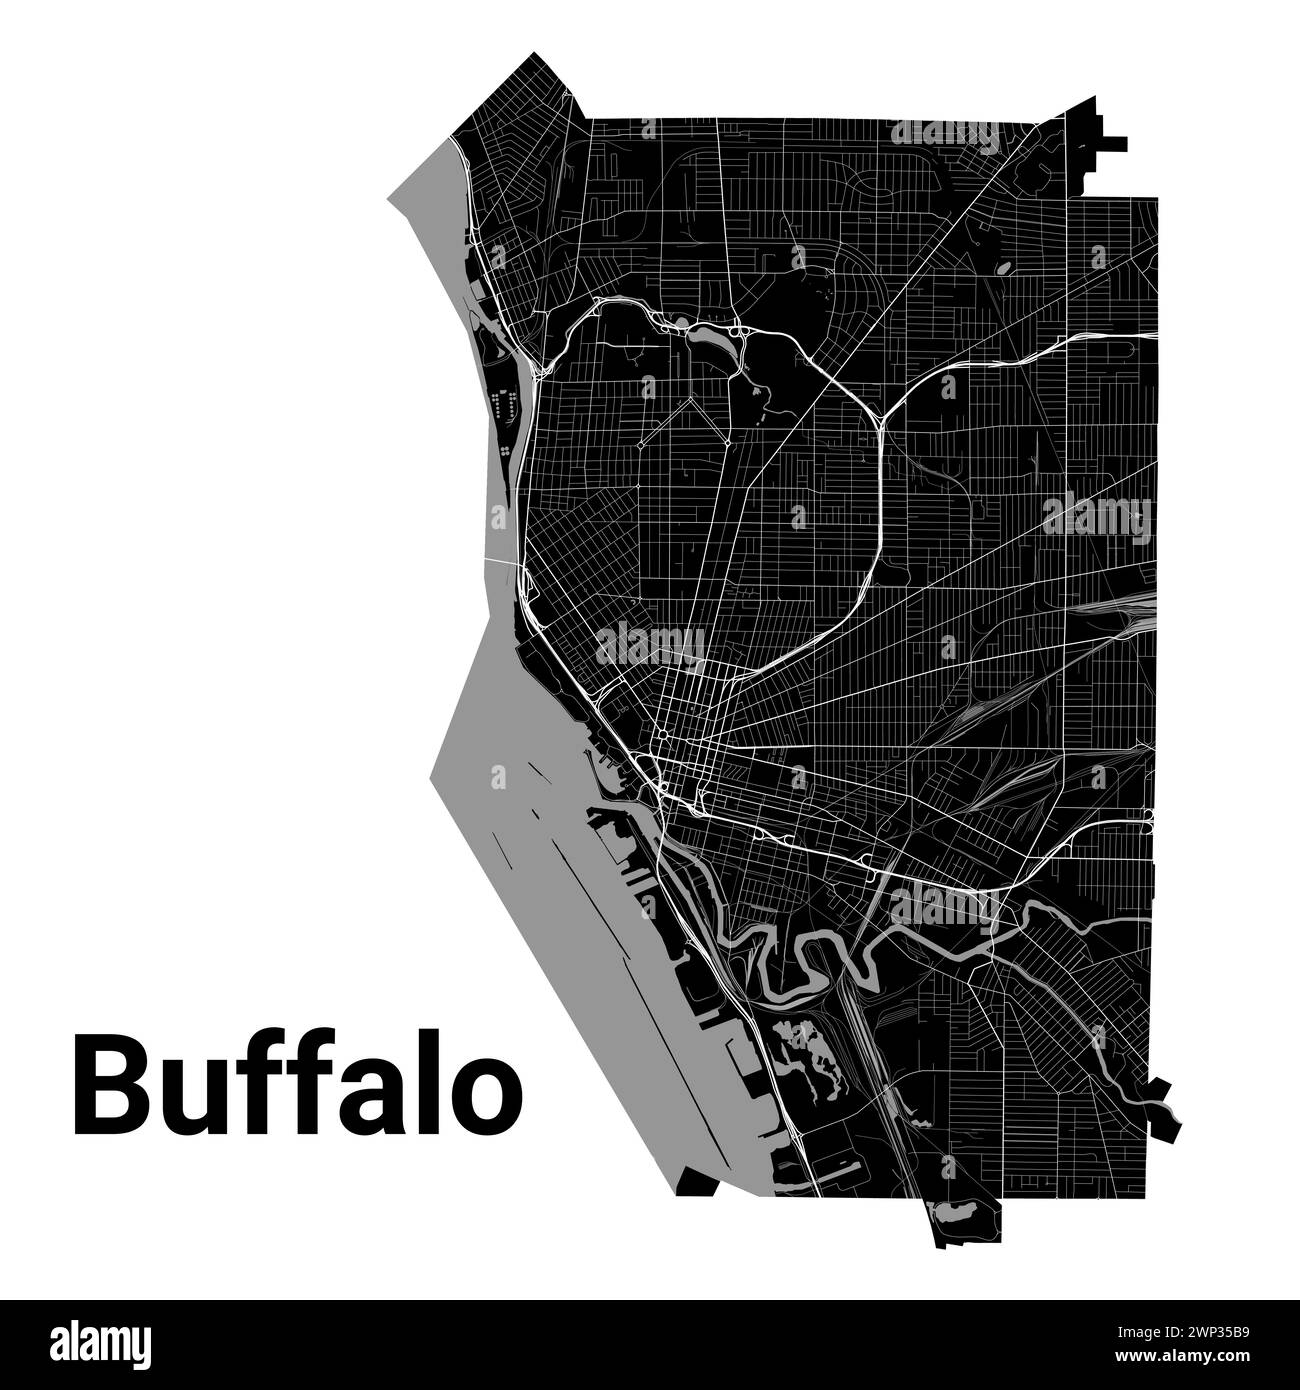 Carte de la ville de Buffalo, New York, États-Unis. Frontières administratives municipales, carte en noir et blanc avec rivières et routes, parcs et chemins de fer. Vecto Illustration de Vecteur